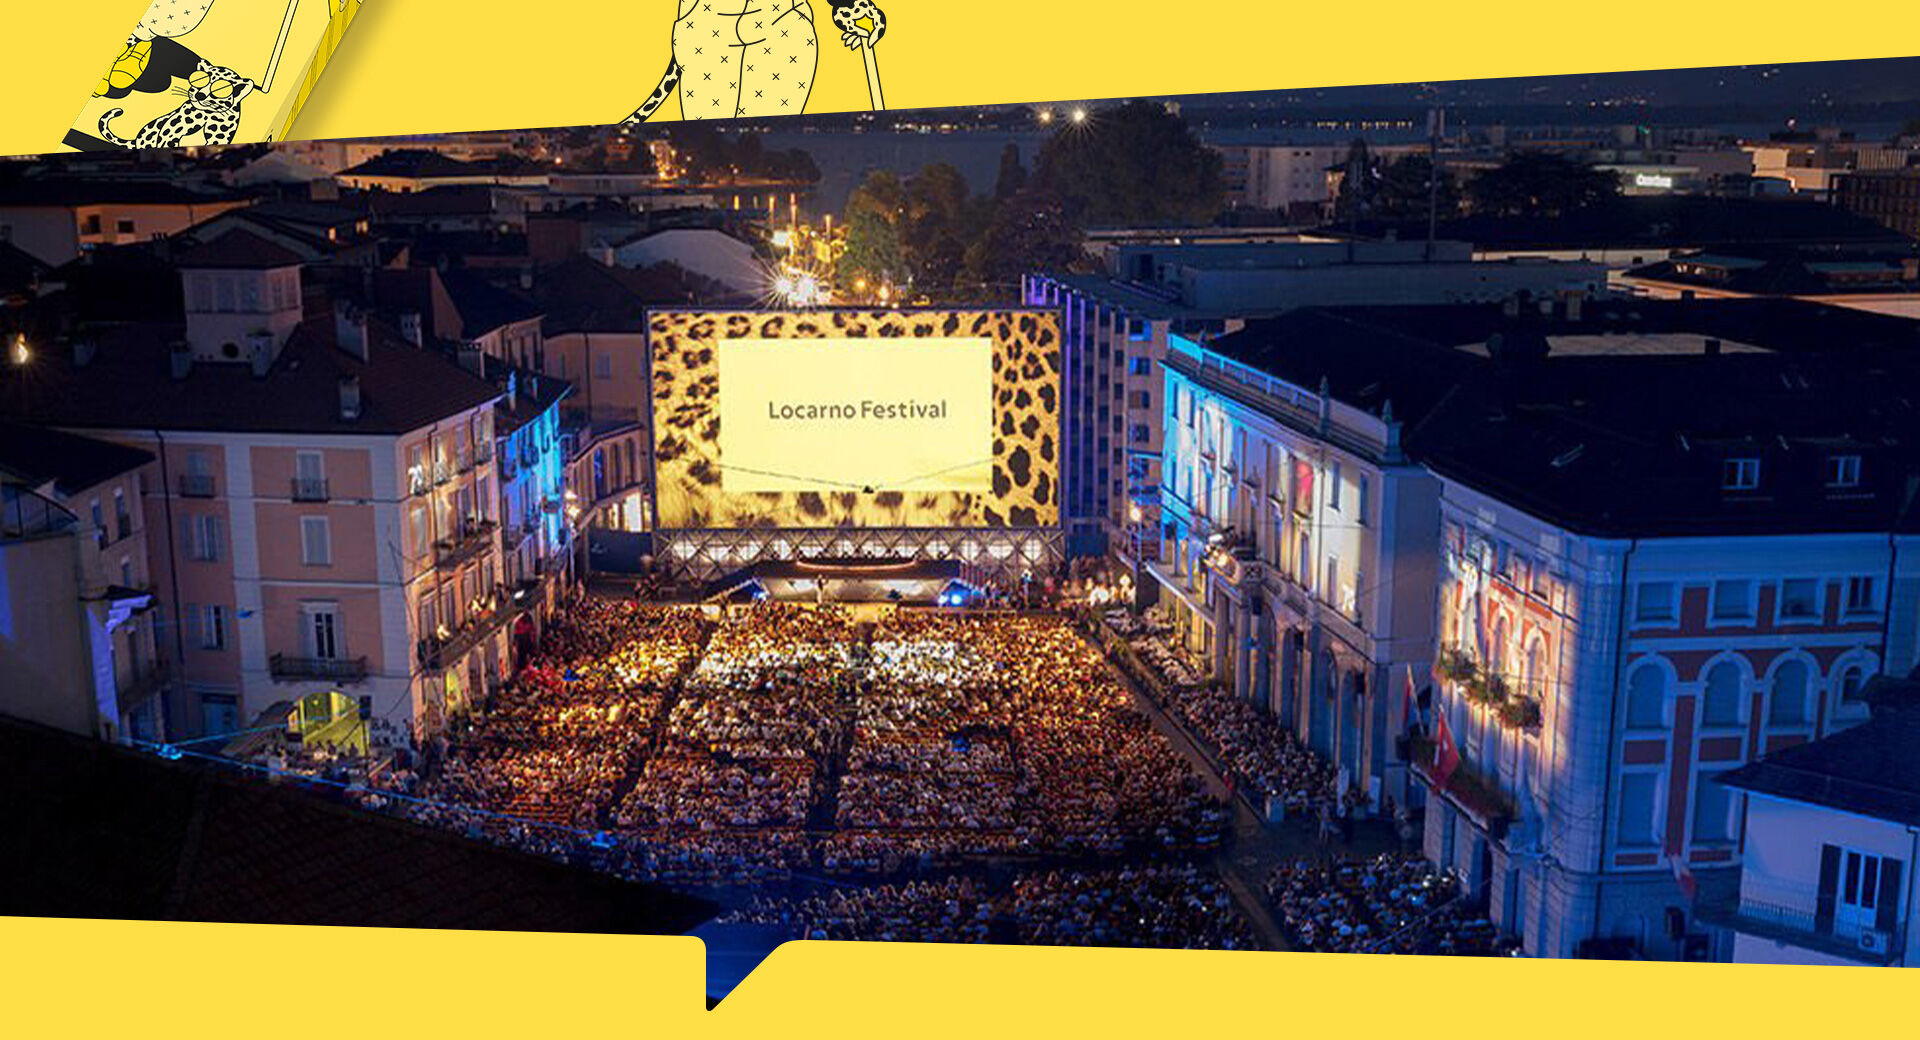 The 'Piazza Grande' at Locarno Film Festival